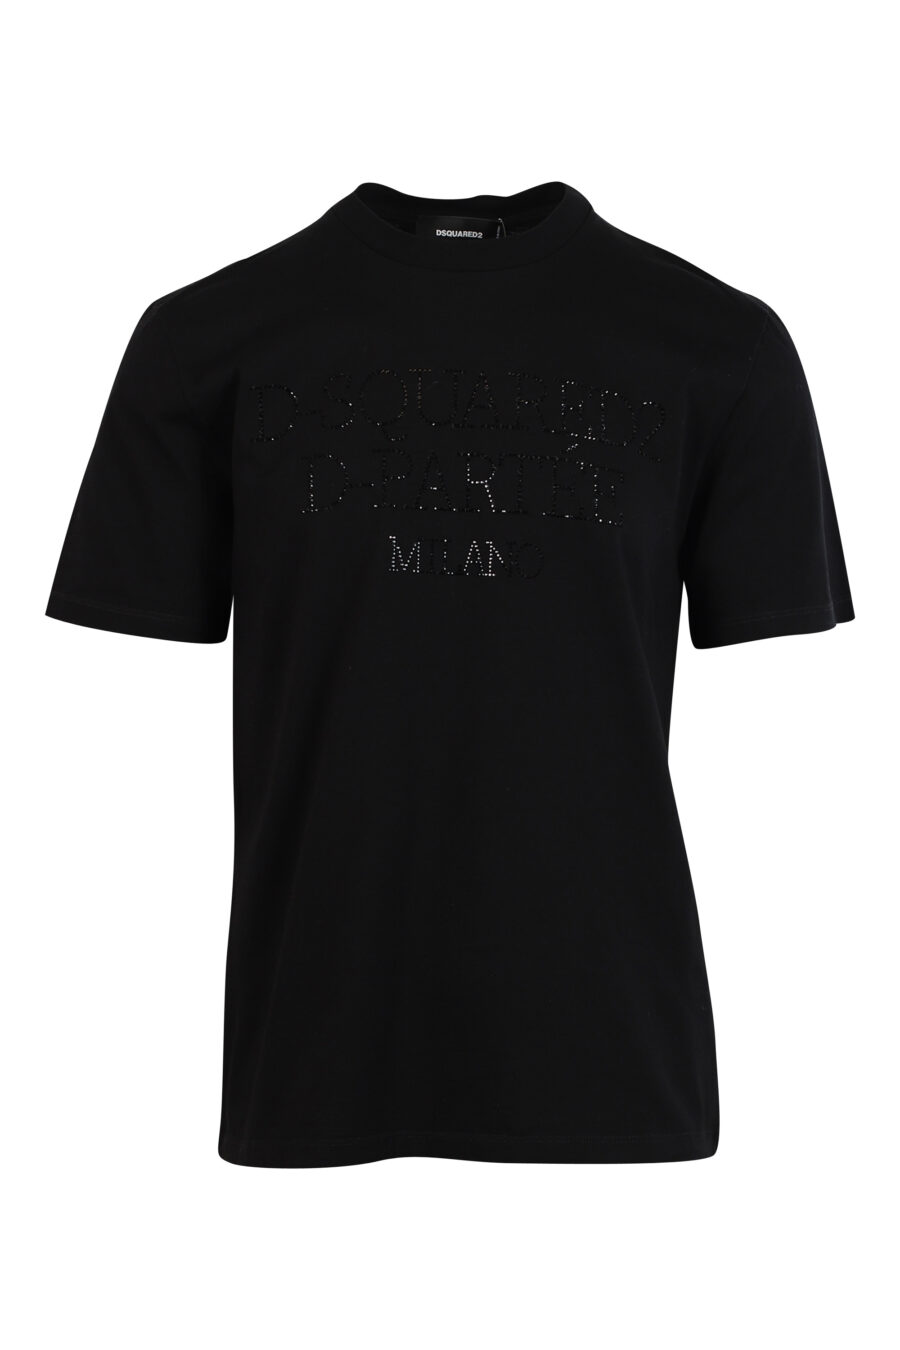 Schwarzes T-Shirt mit schwarzem geprägtem Maxilogo - 8052134990285